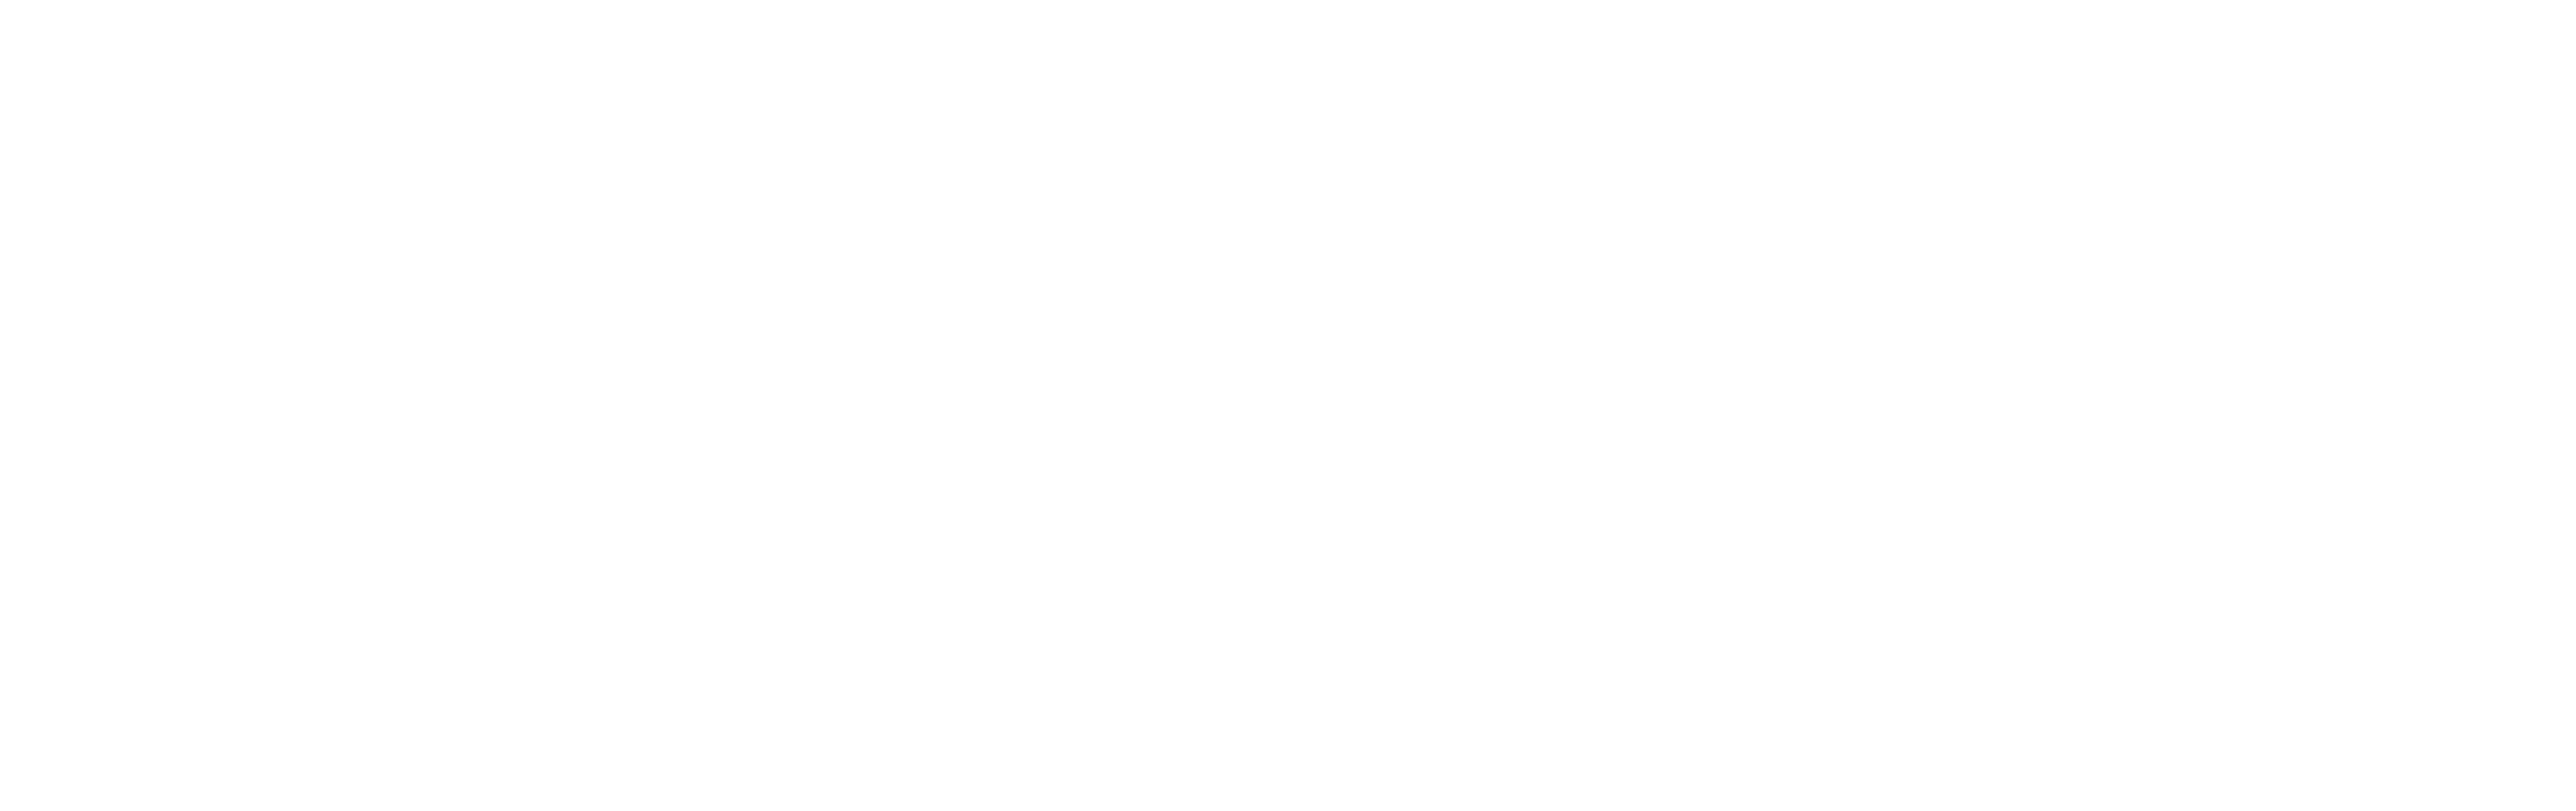 MP&F Logo White